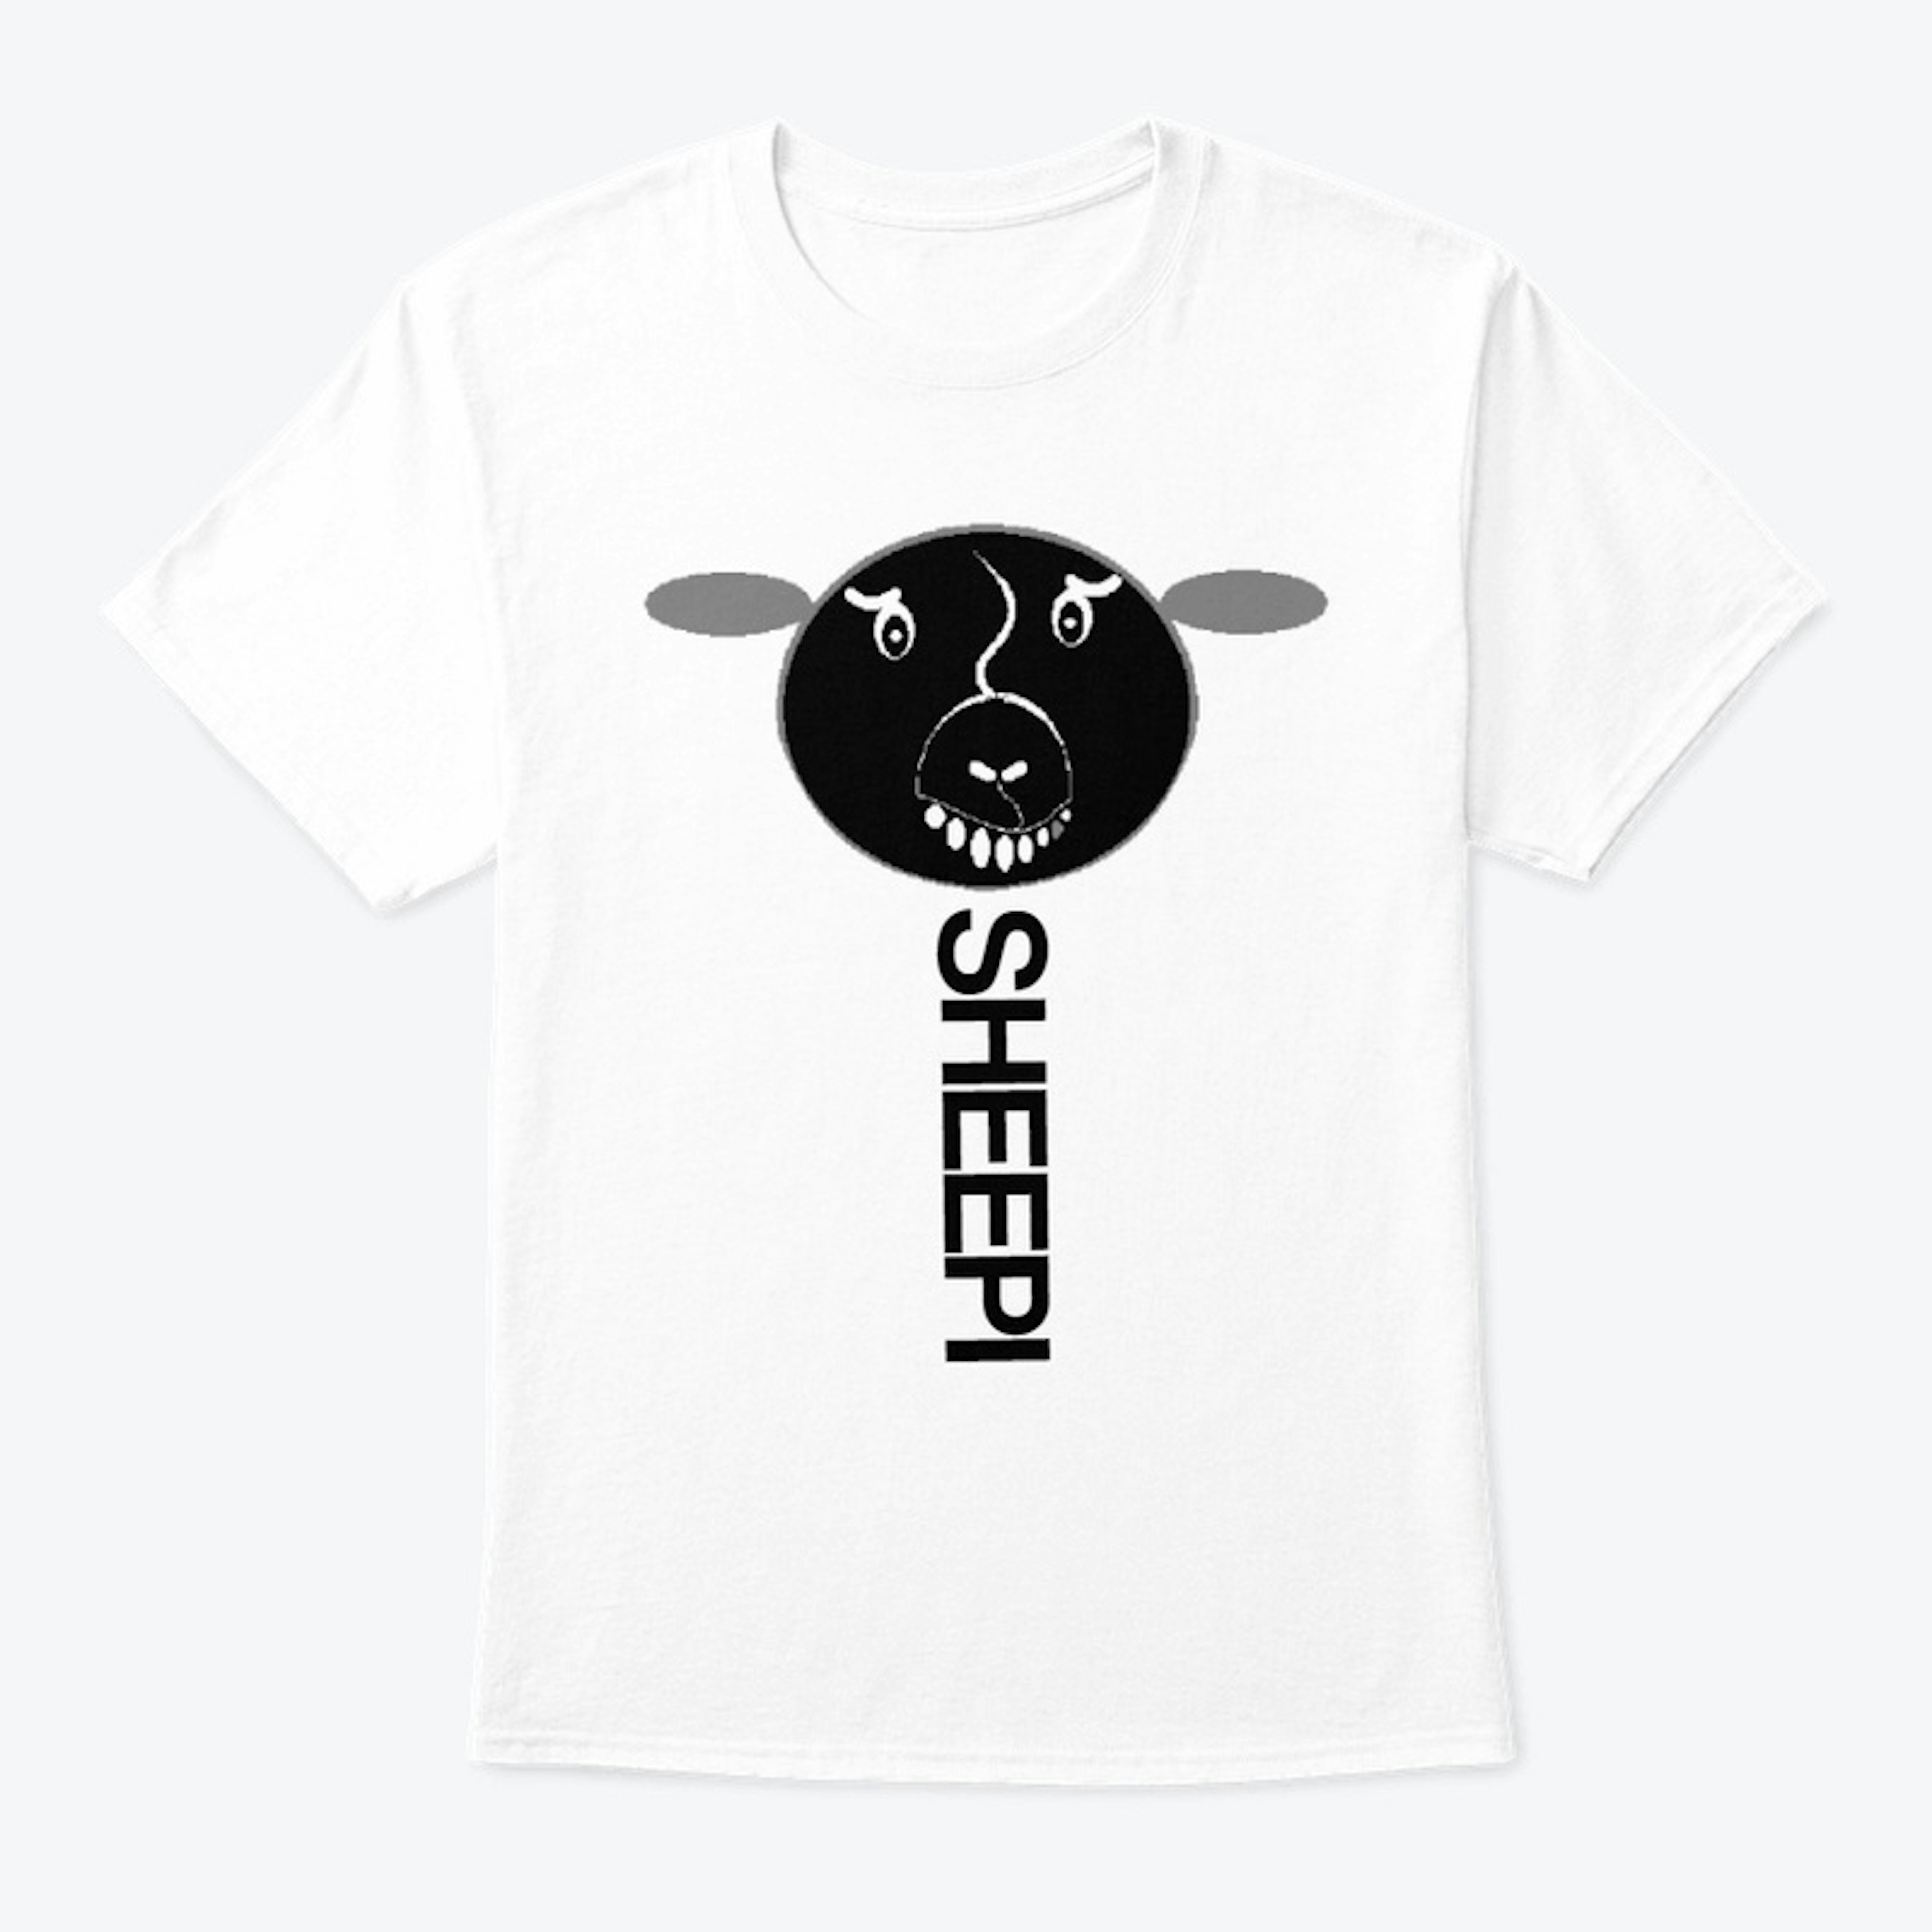 The SHEEPI Factor